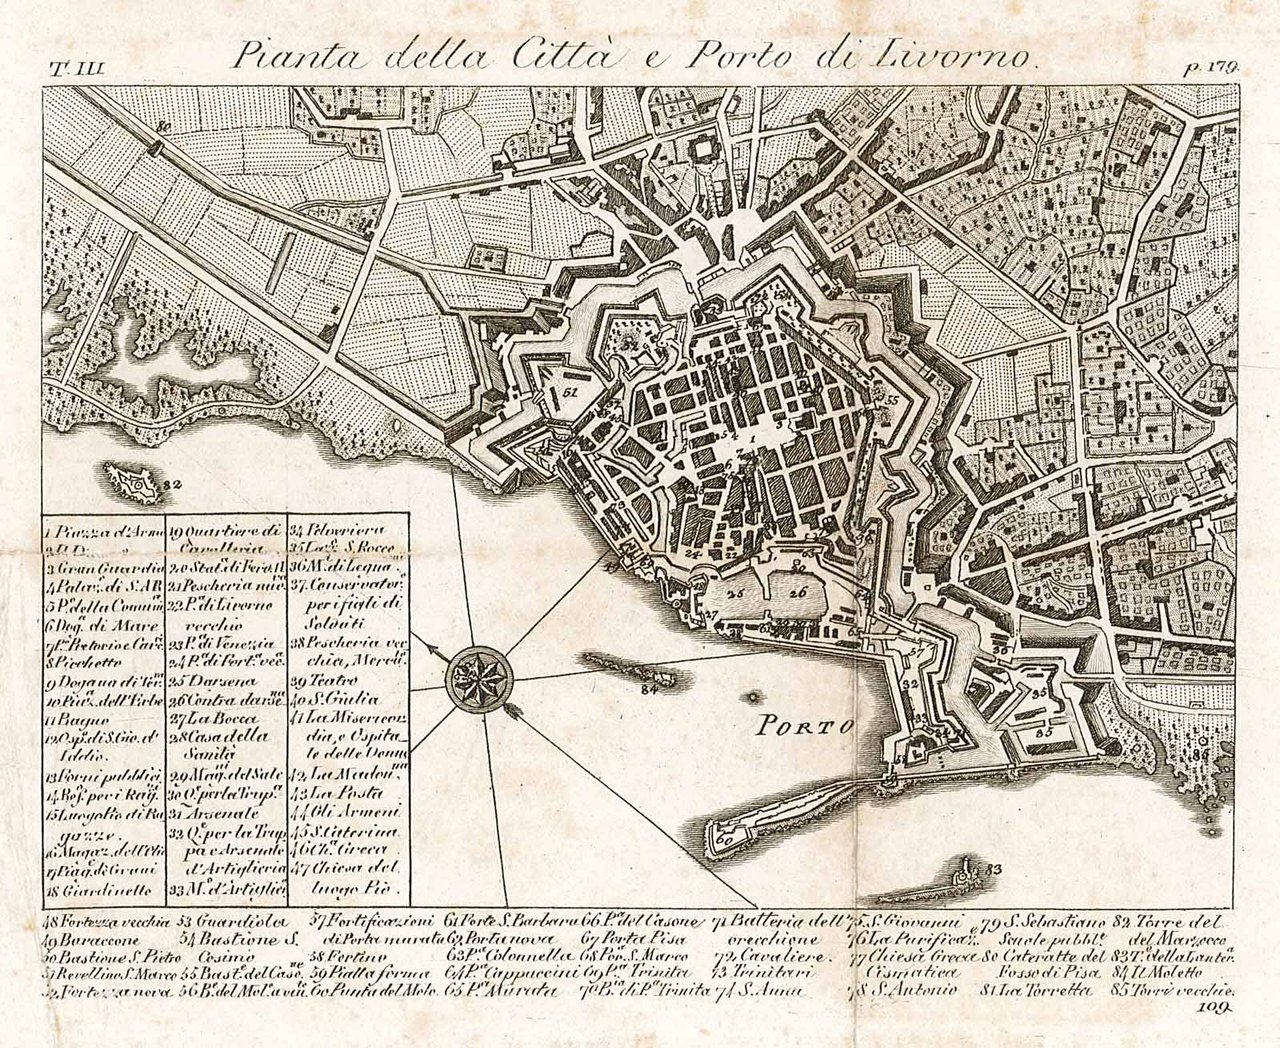 Pianta della Città e Porto di Livorno